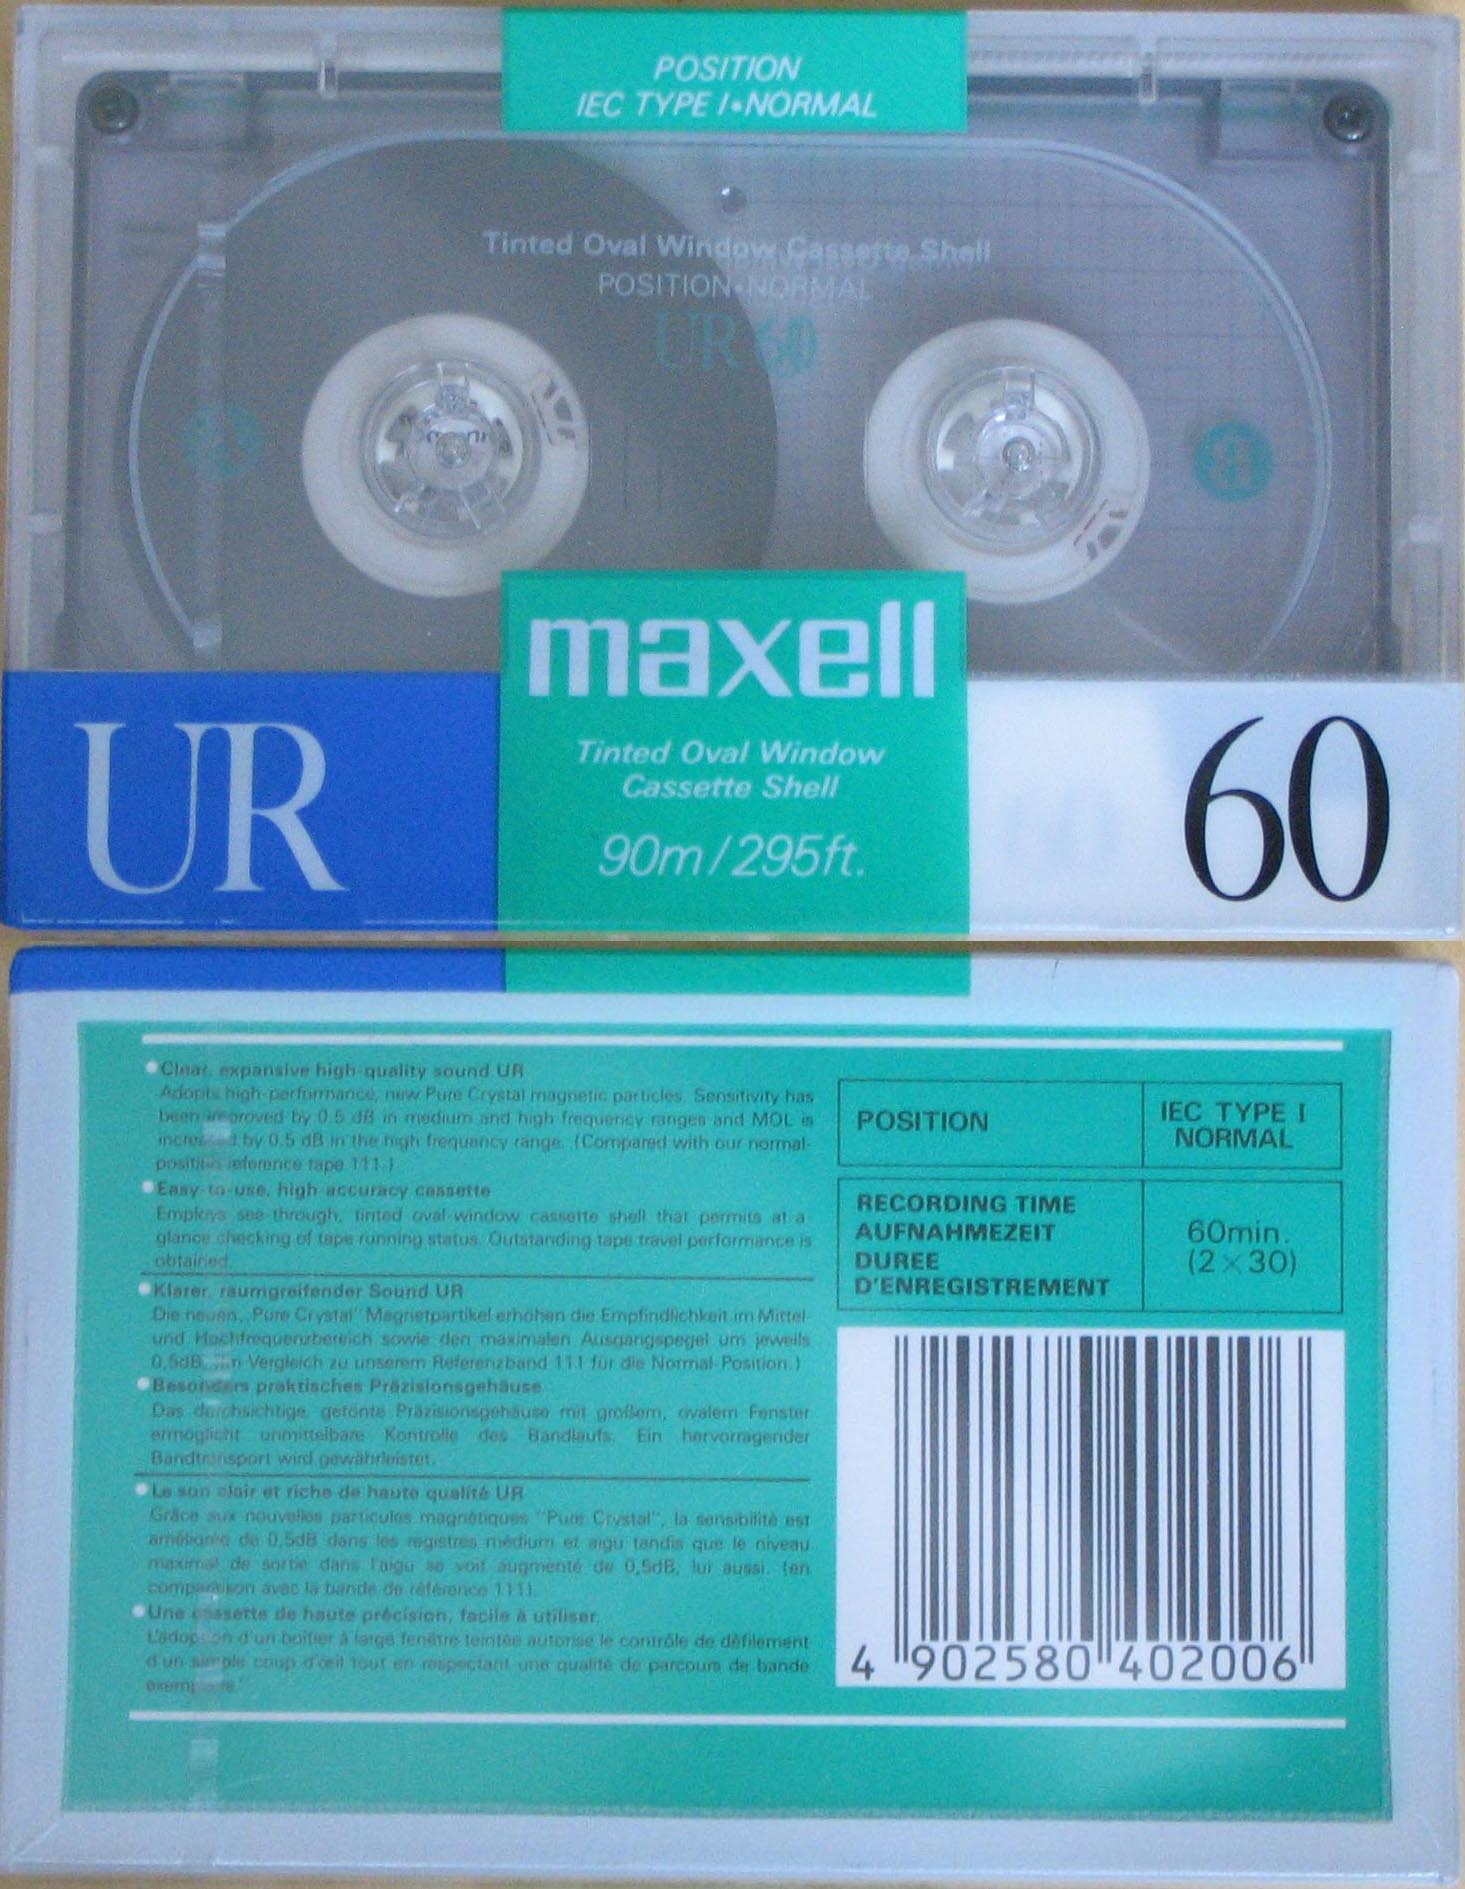 Maxell_UR60_1989.JPG